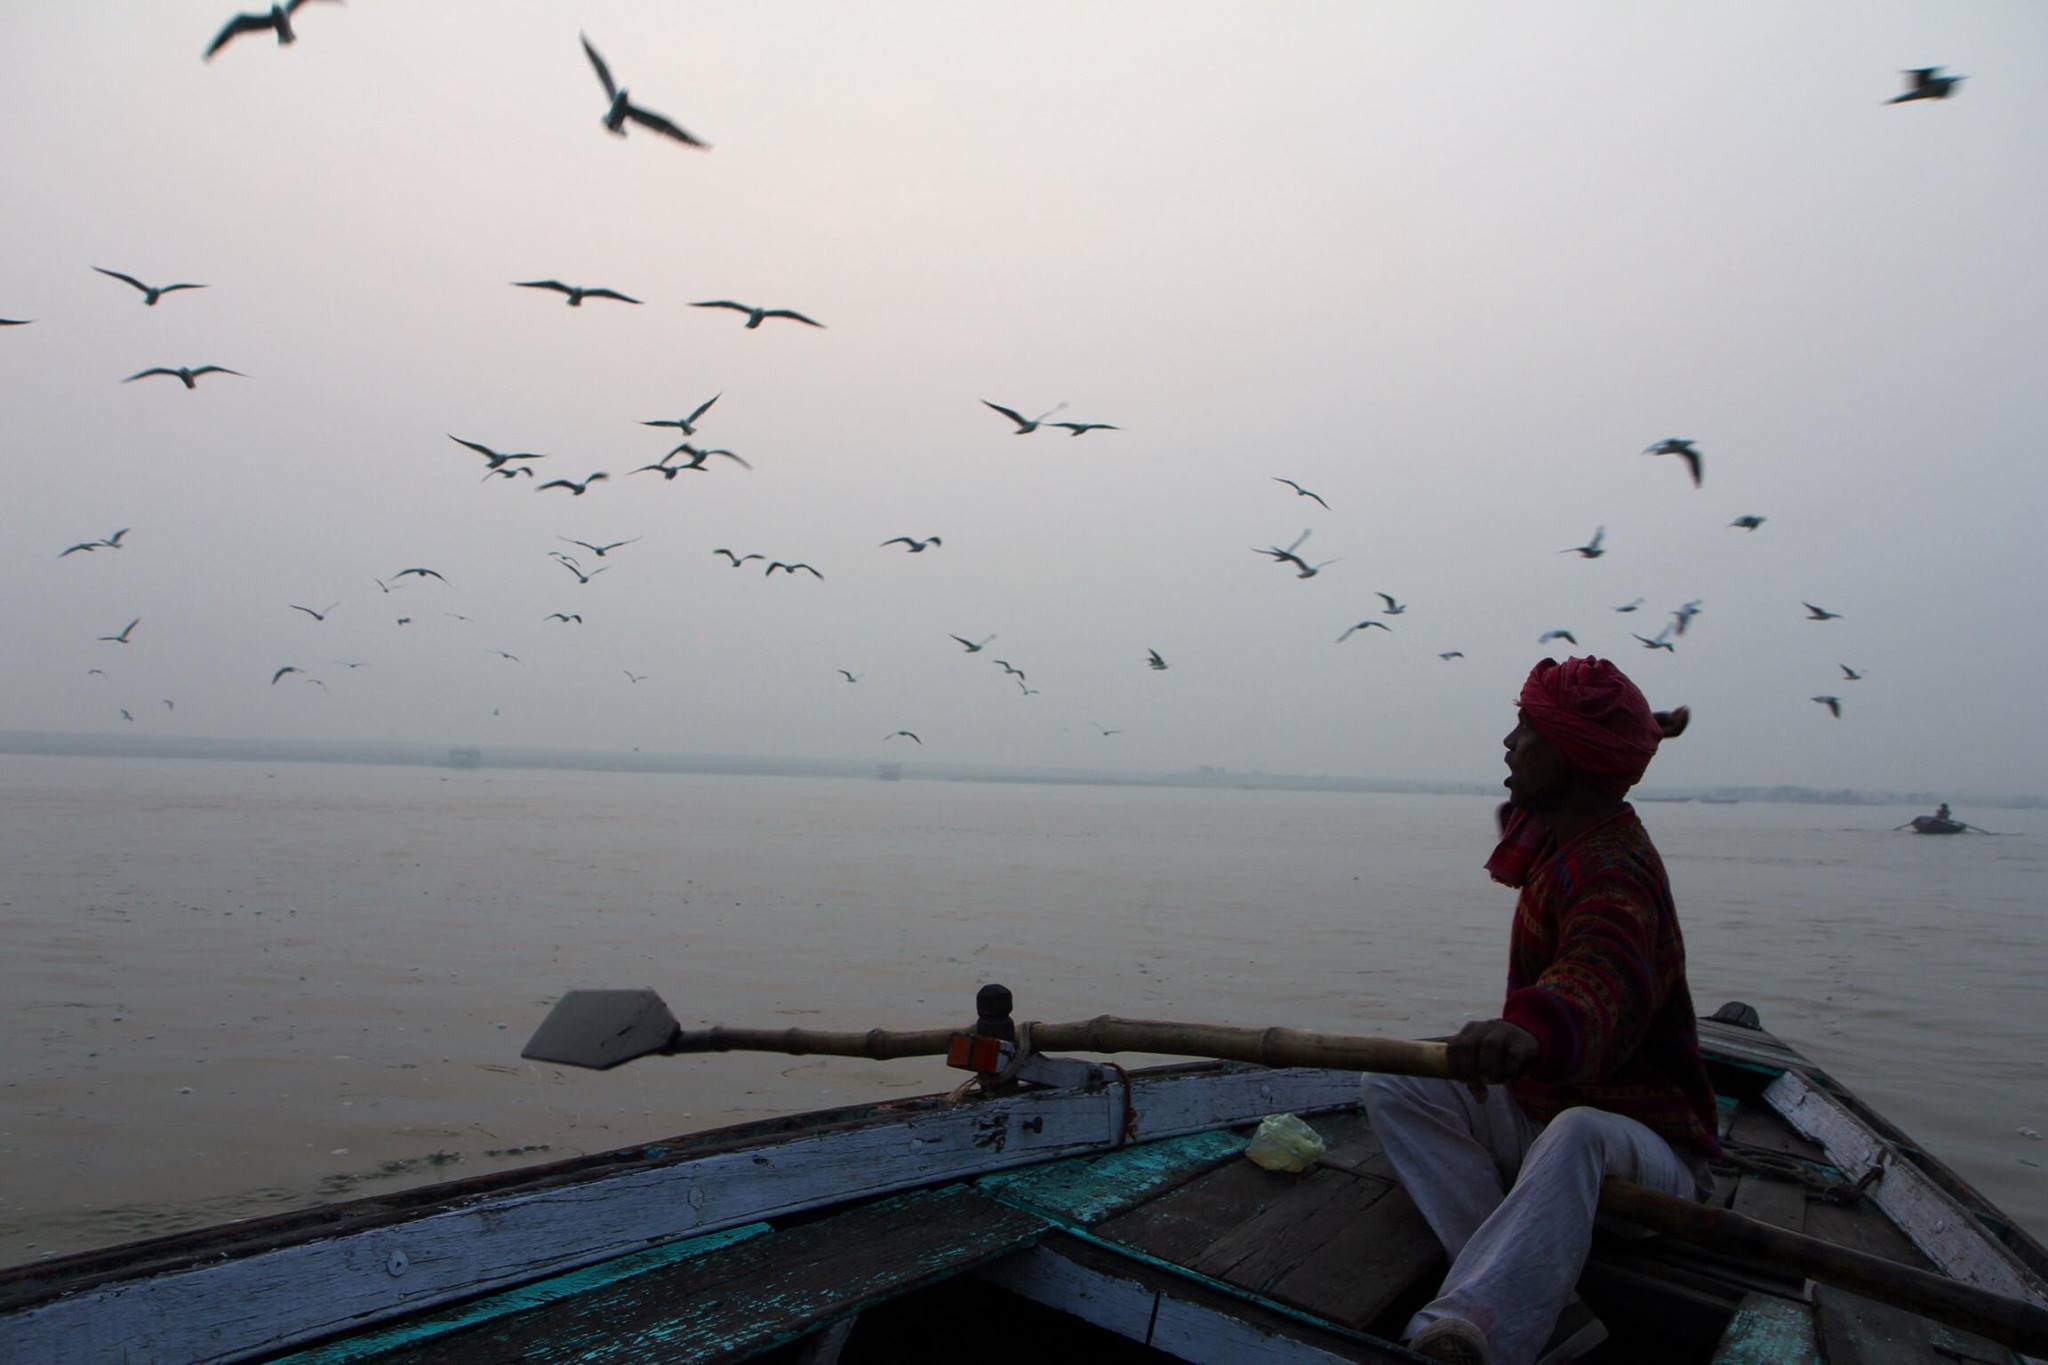 Onze bootsman op de Ganges roept de vogels